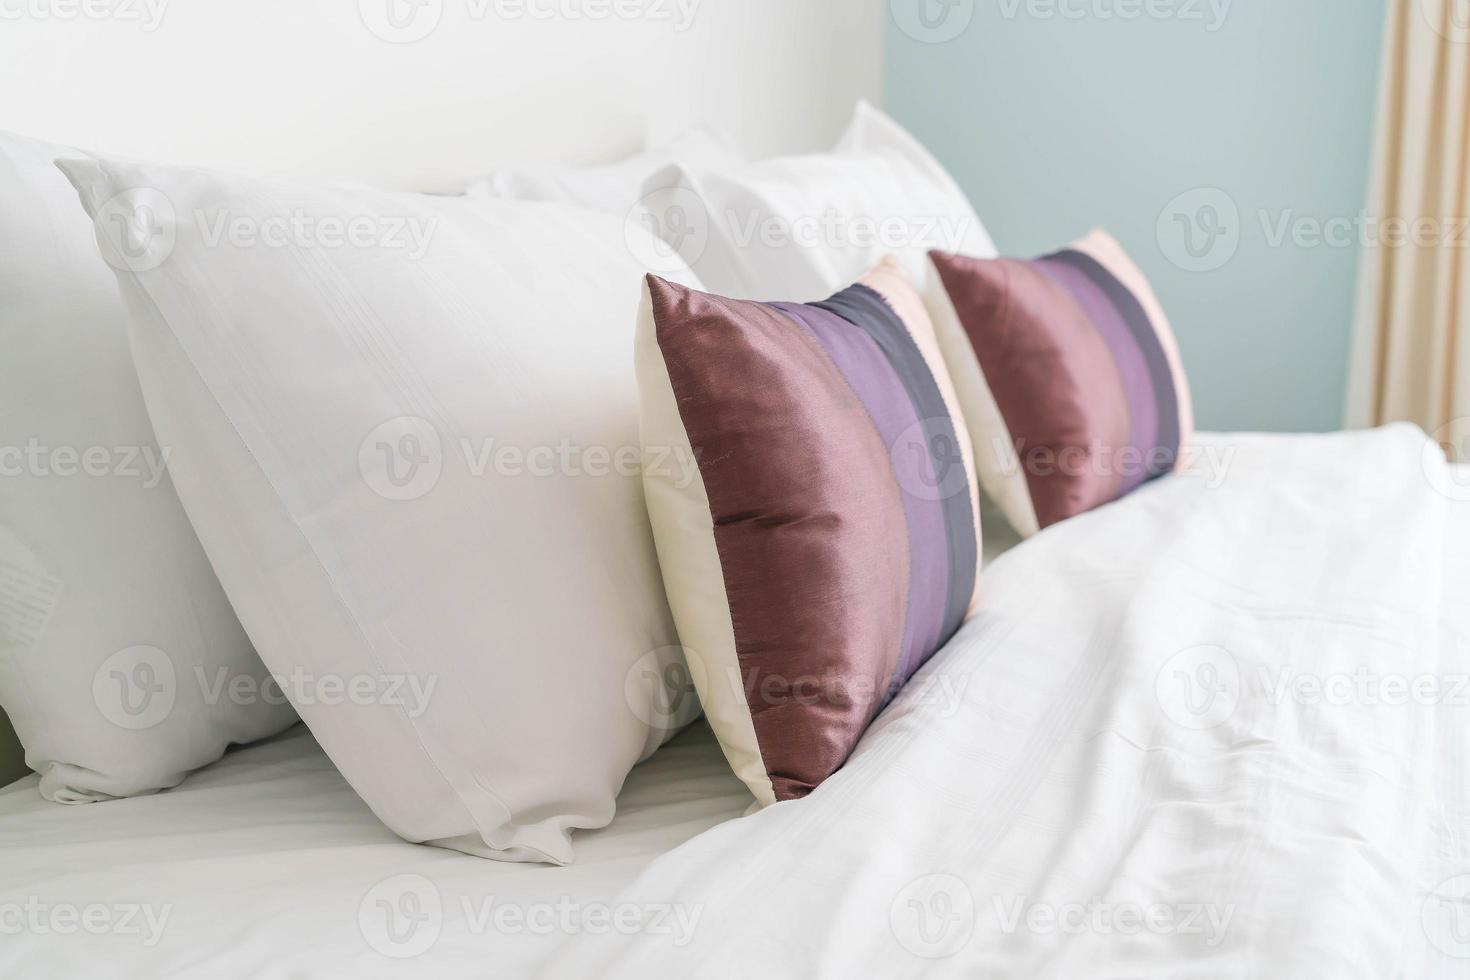 decoração de travesseiro na cama no interior do quarto foto